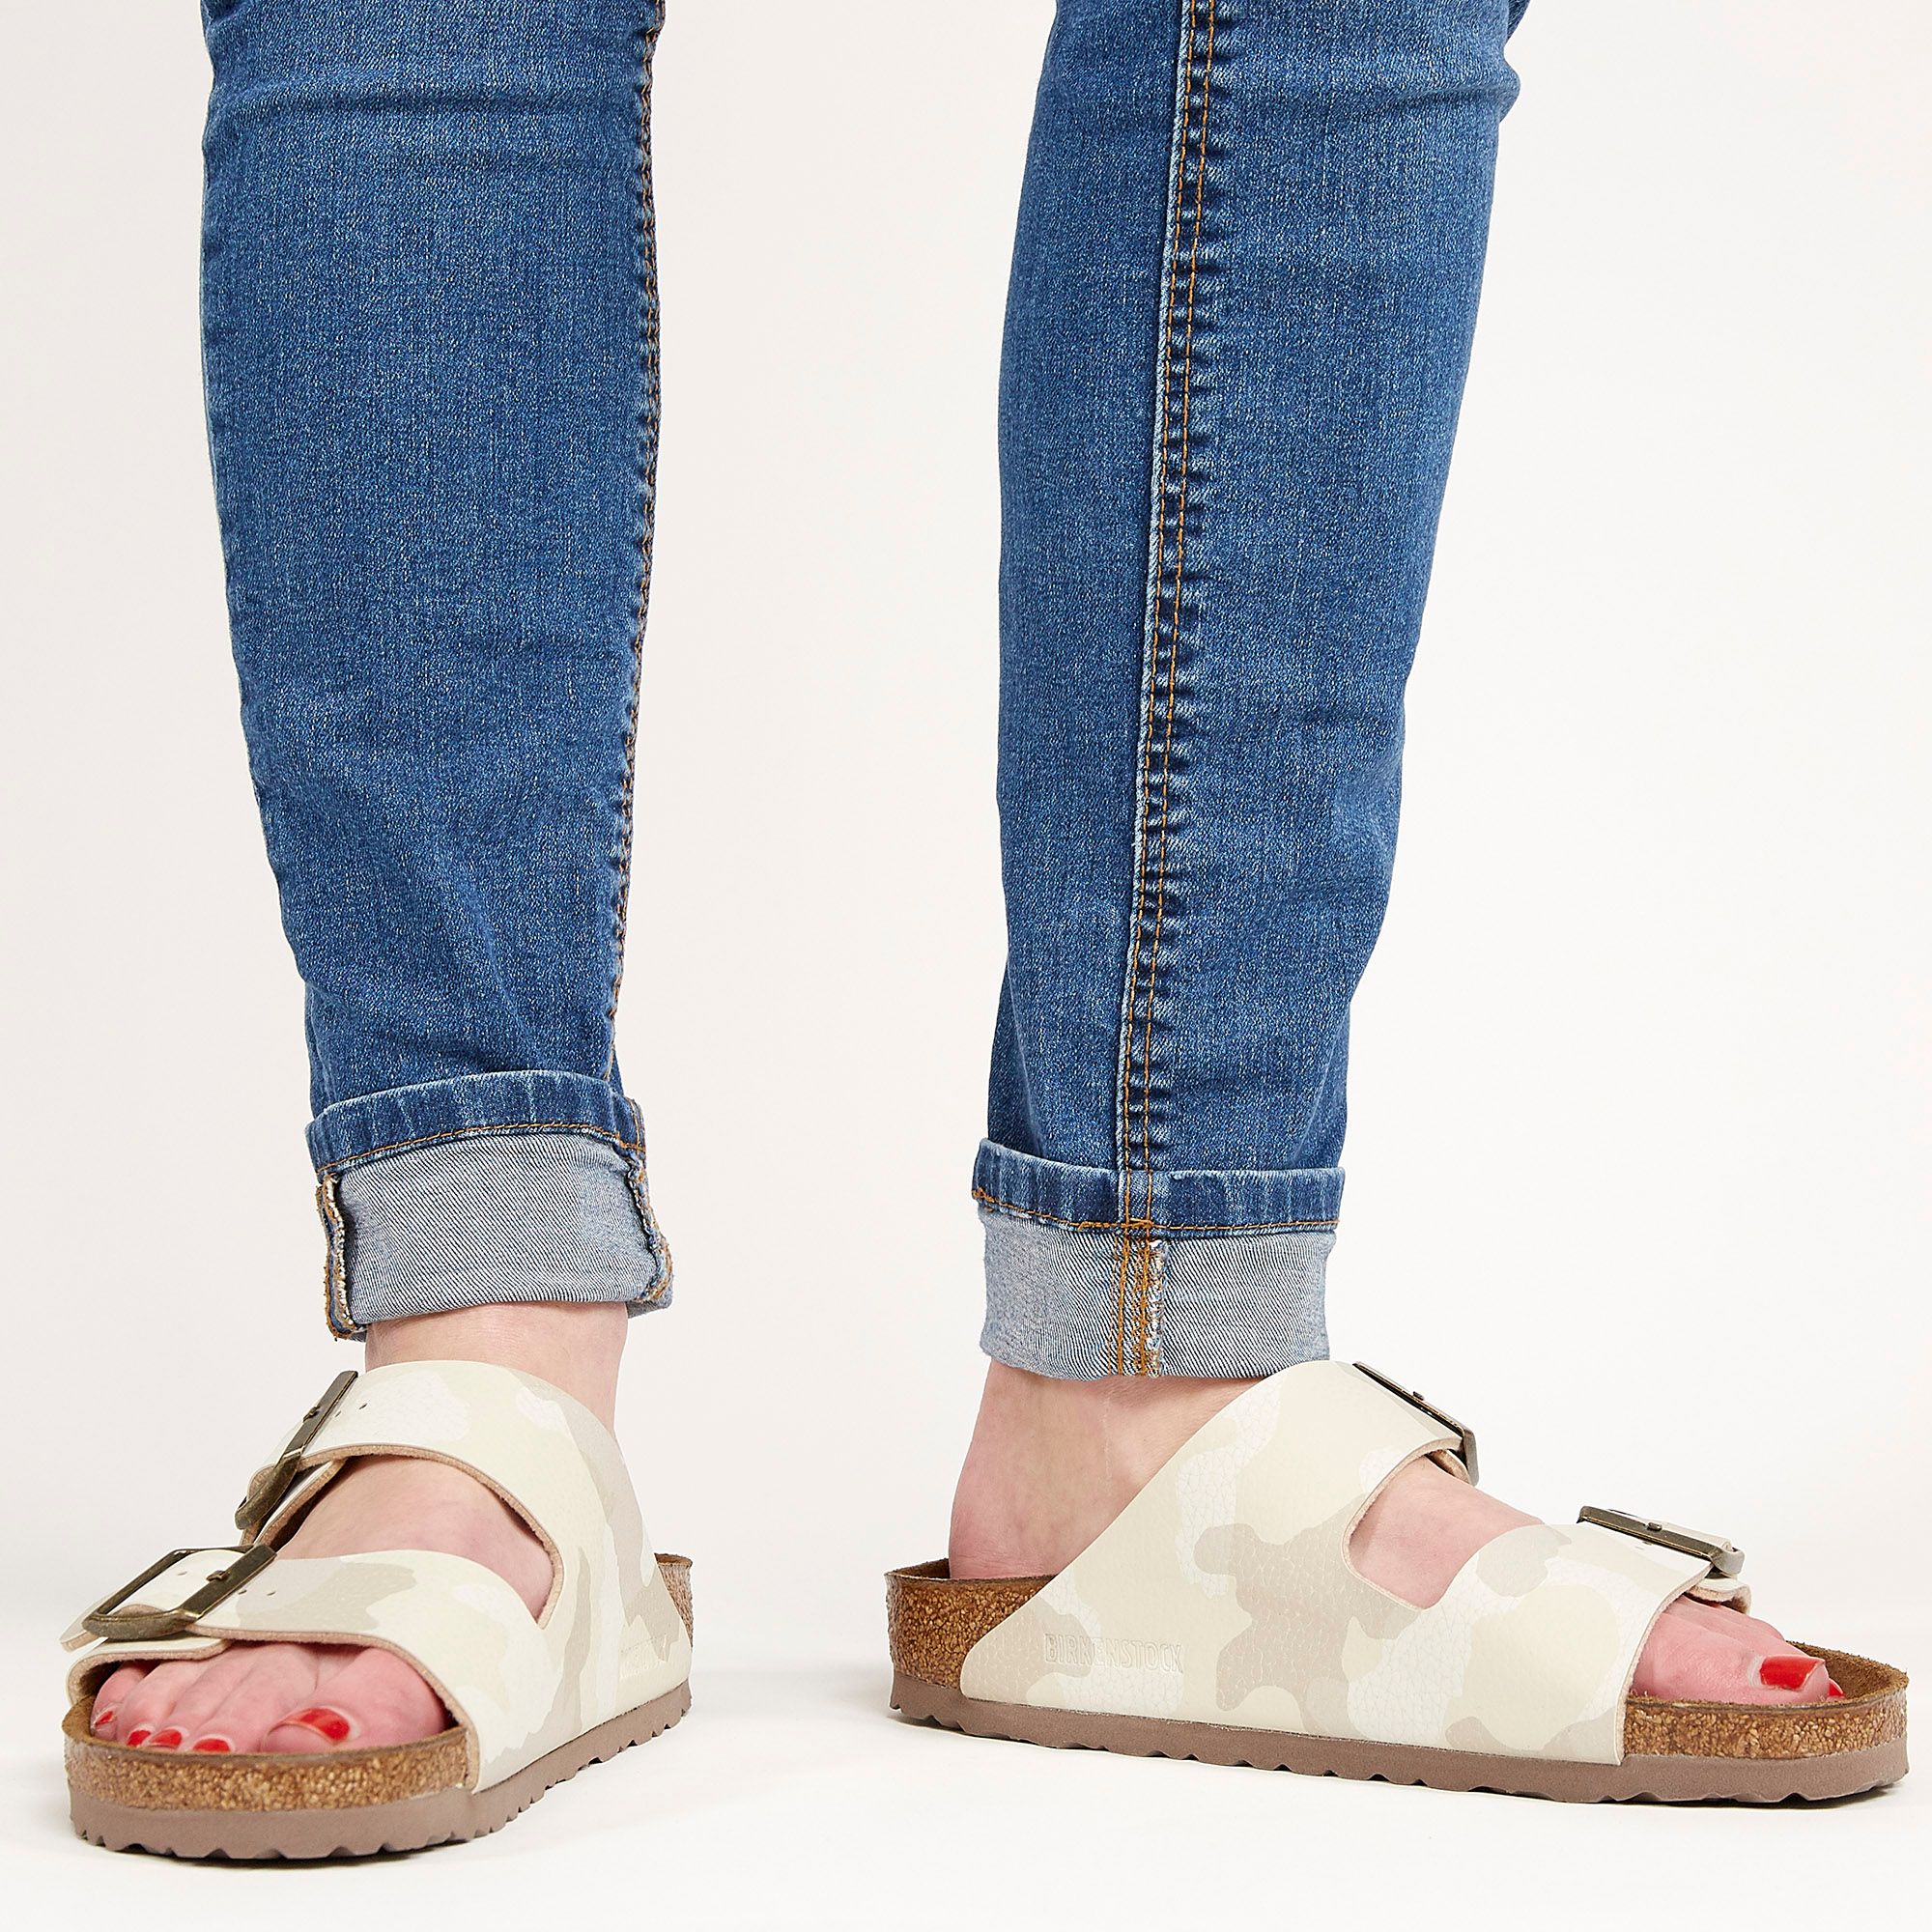 Birkenstock Women's Arizona Sandals